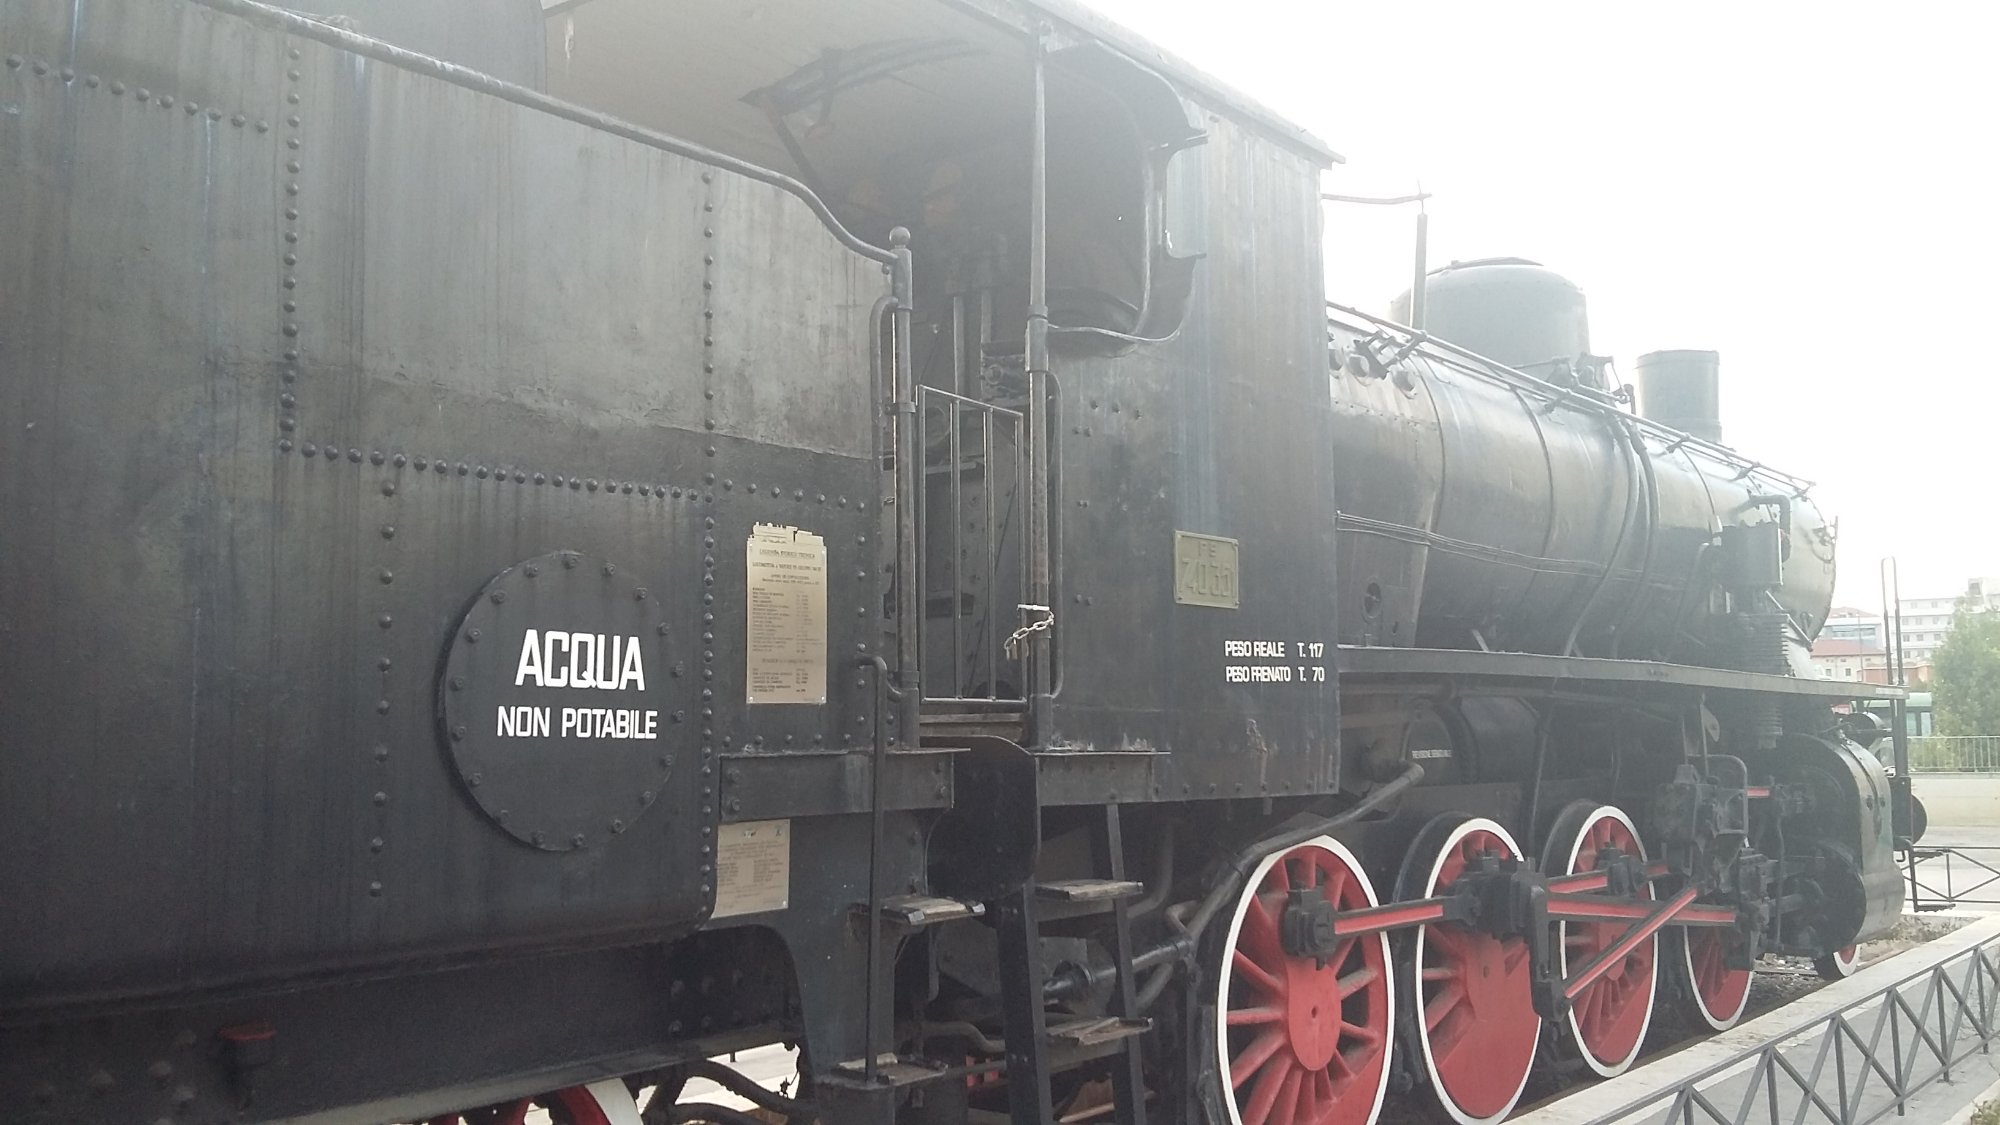 Locomotiva FS 740